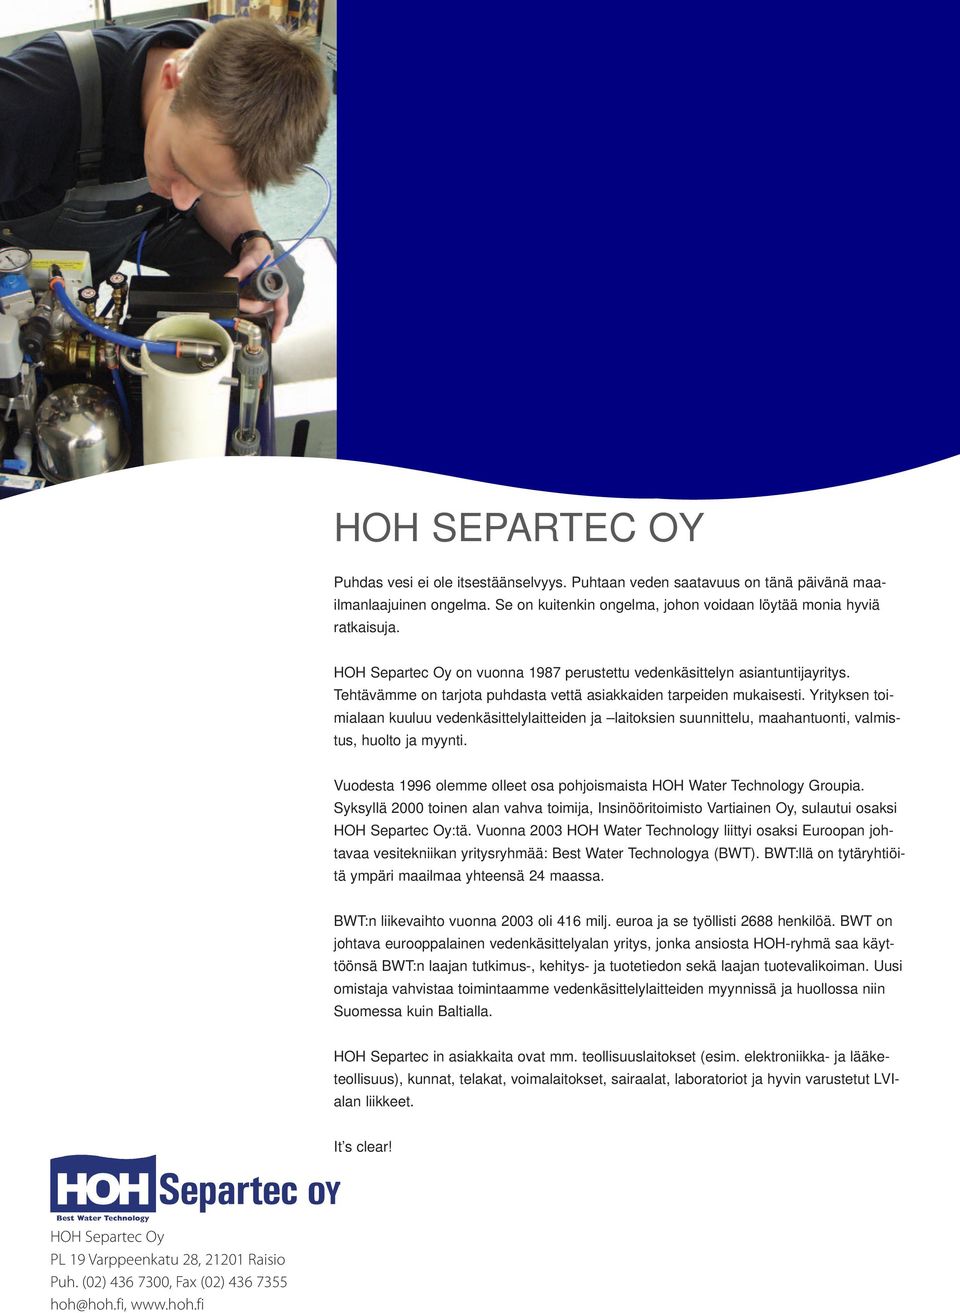 Yrityksen toimialaan kuuluu vedenkäsittelylaitteiden ja laitoksien suunnittelu, maahantuonti, valmistus, huolto ja myynti. Vuodesta 1996 olemme olleet osa pohjoismaista HOH Water Technology Groupia.